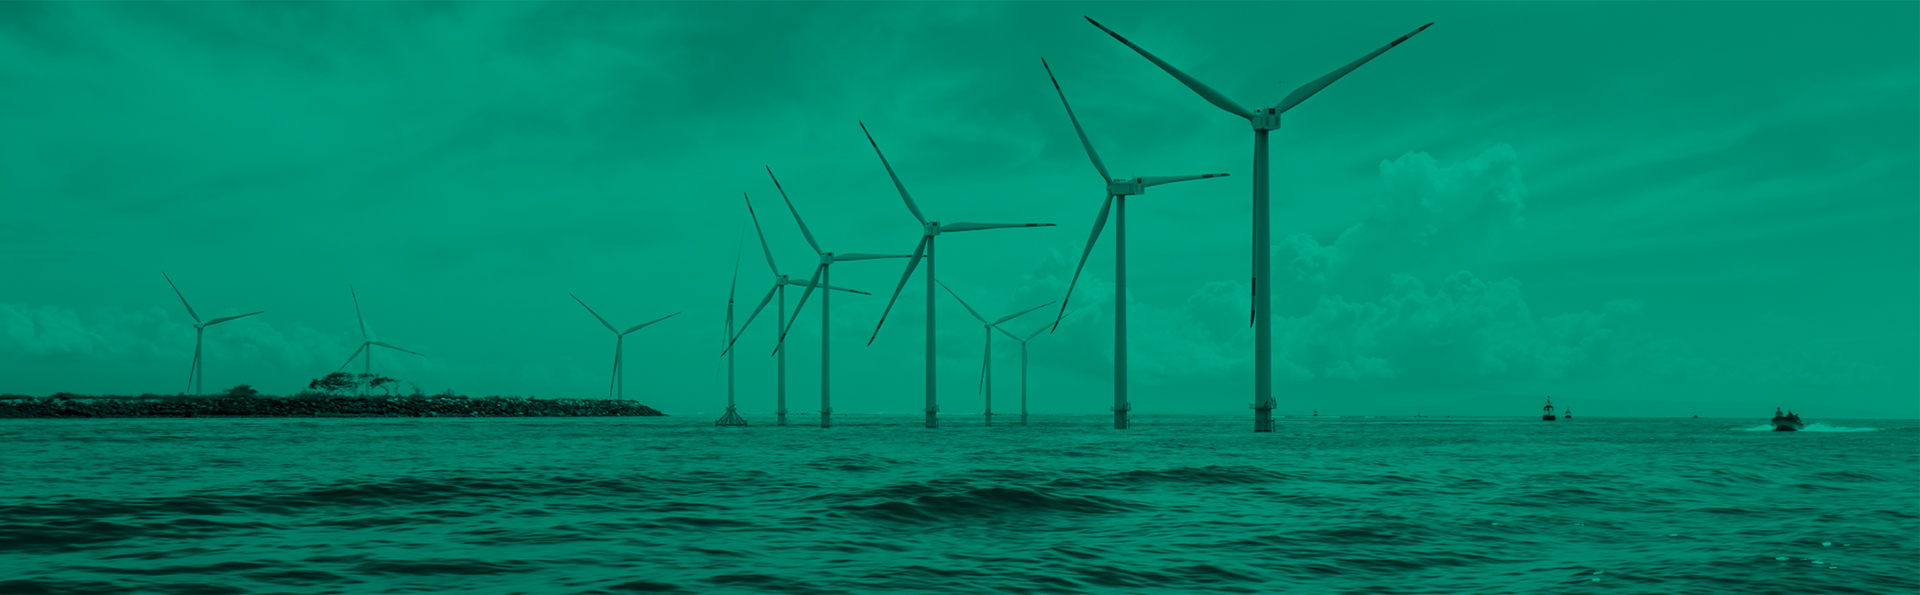 University of Houston: UH Energy Offshore Wind Symposium Image